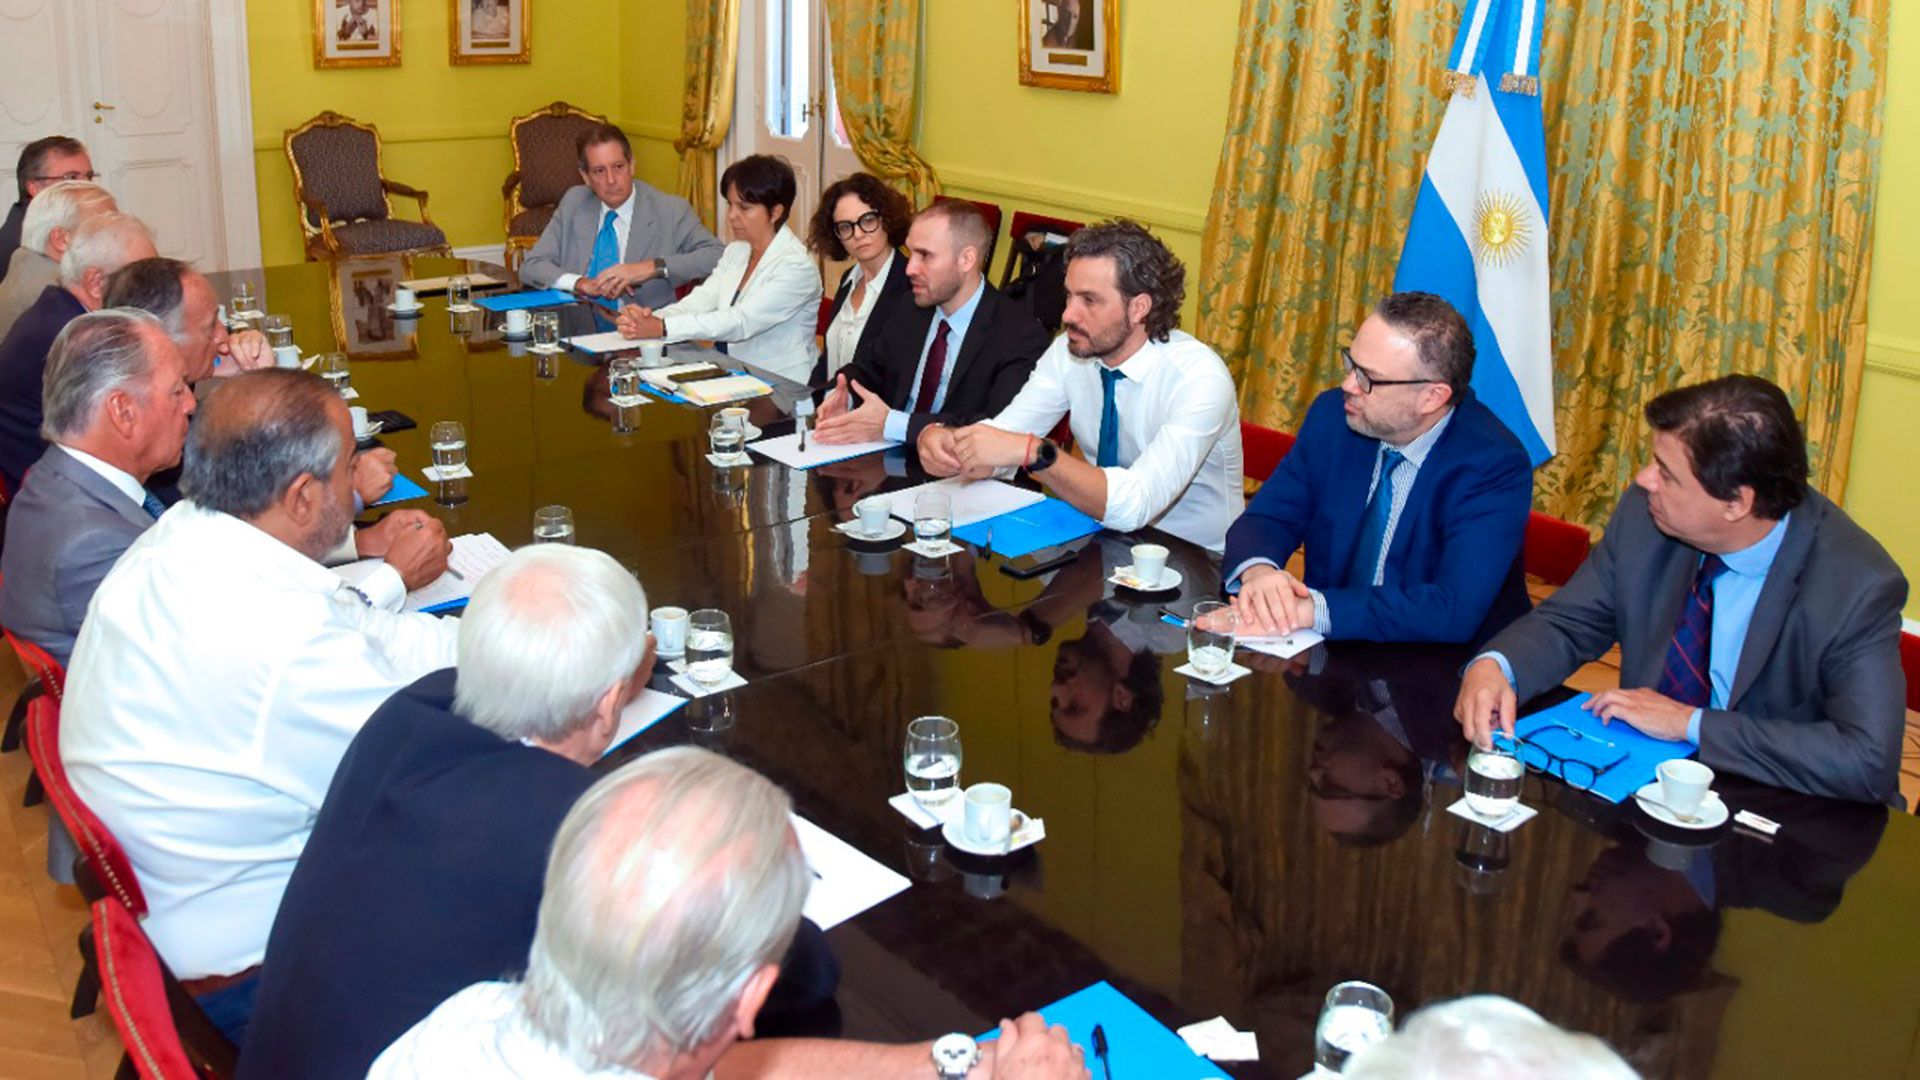 El gabinete económico se reunió el 20 de febrero en la Casa Rosada con empresarios y sindicalistas para hablar sobre las negociaciones con el FMI